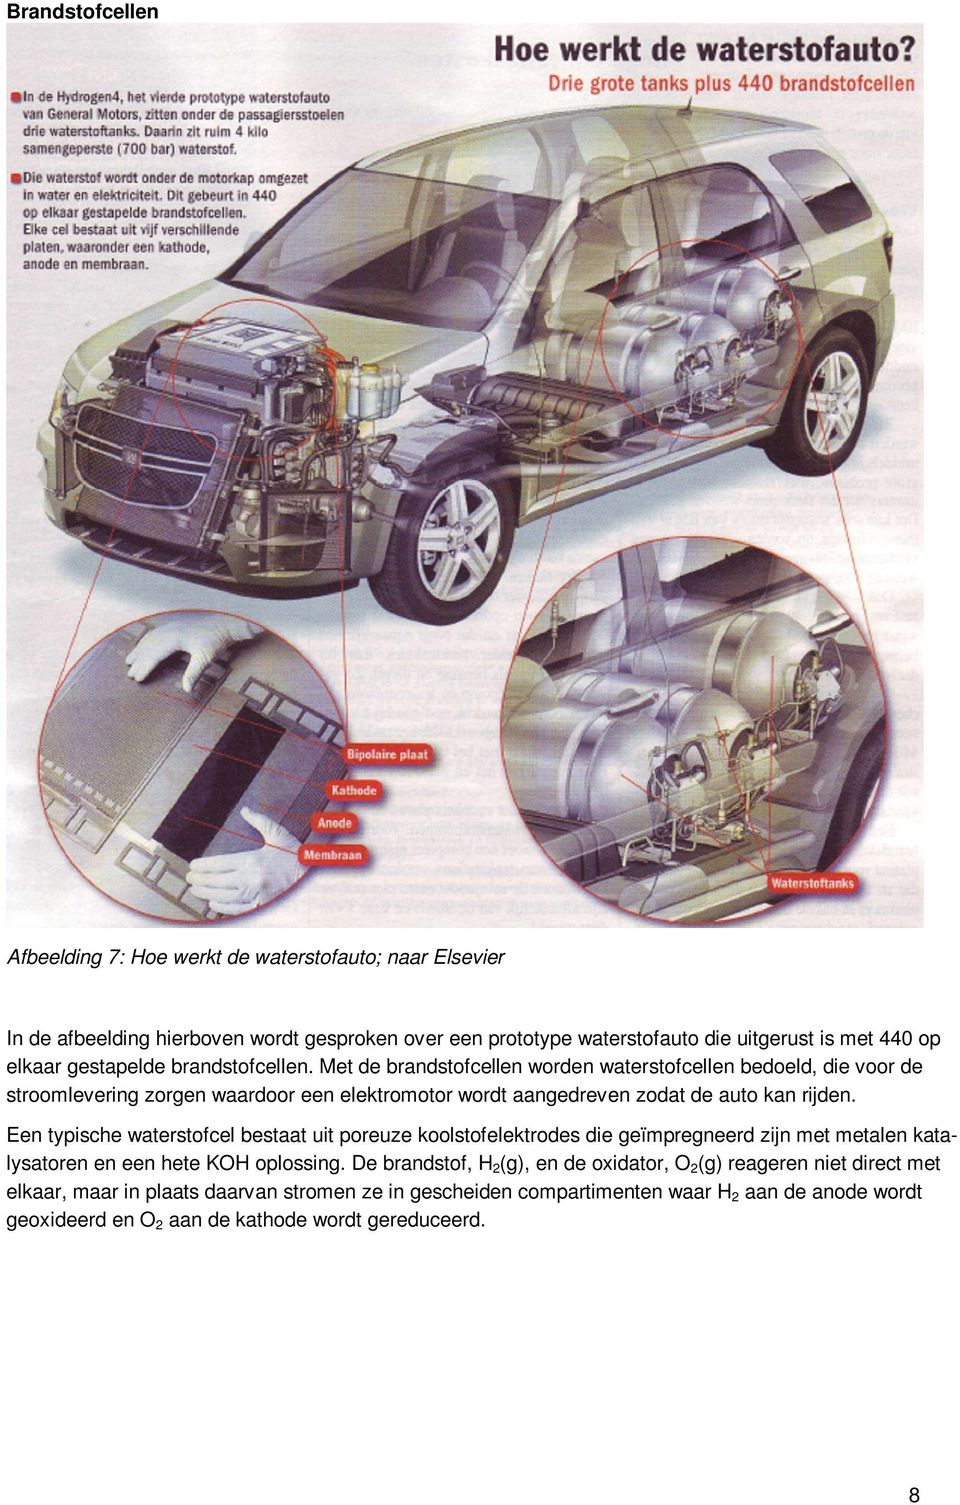 Met de brandstofcellen worden waterstofcellen bedoeld, die voor de stroomlevering zorgen waardoor een elektromotor wordt aangedreven zodat de auto kan rijden.